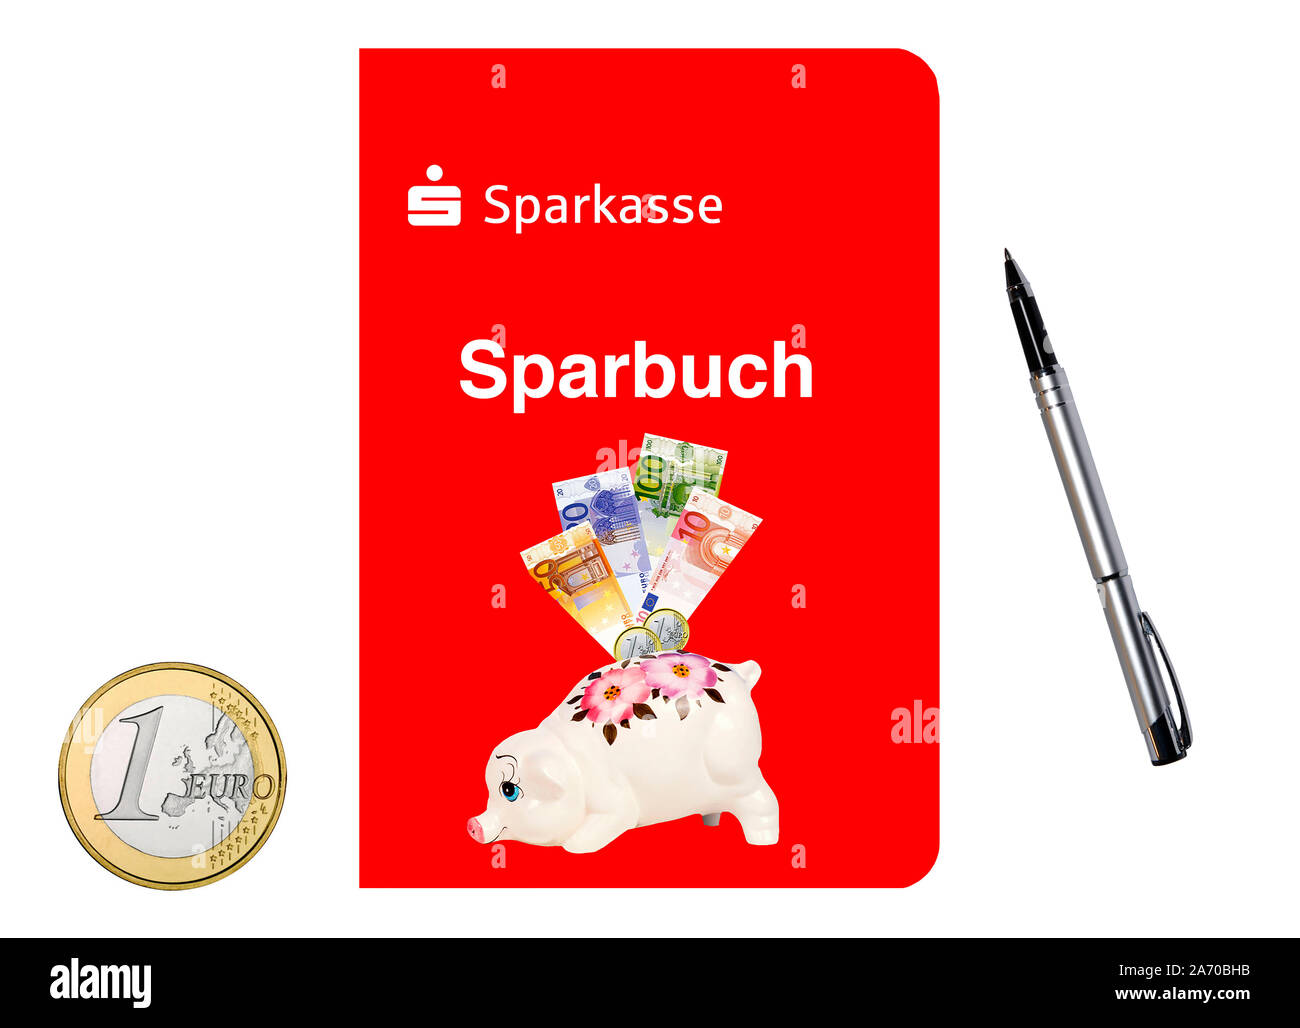 Sparbuch der Sparkasse, Euro Münzen, Stock Photo